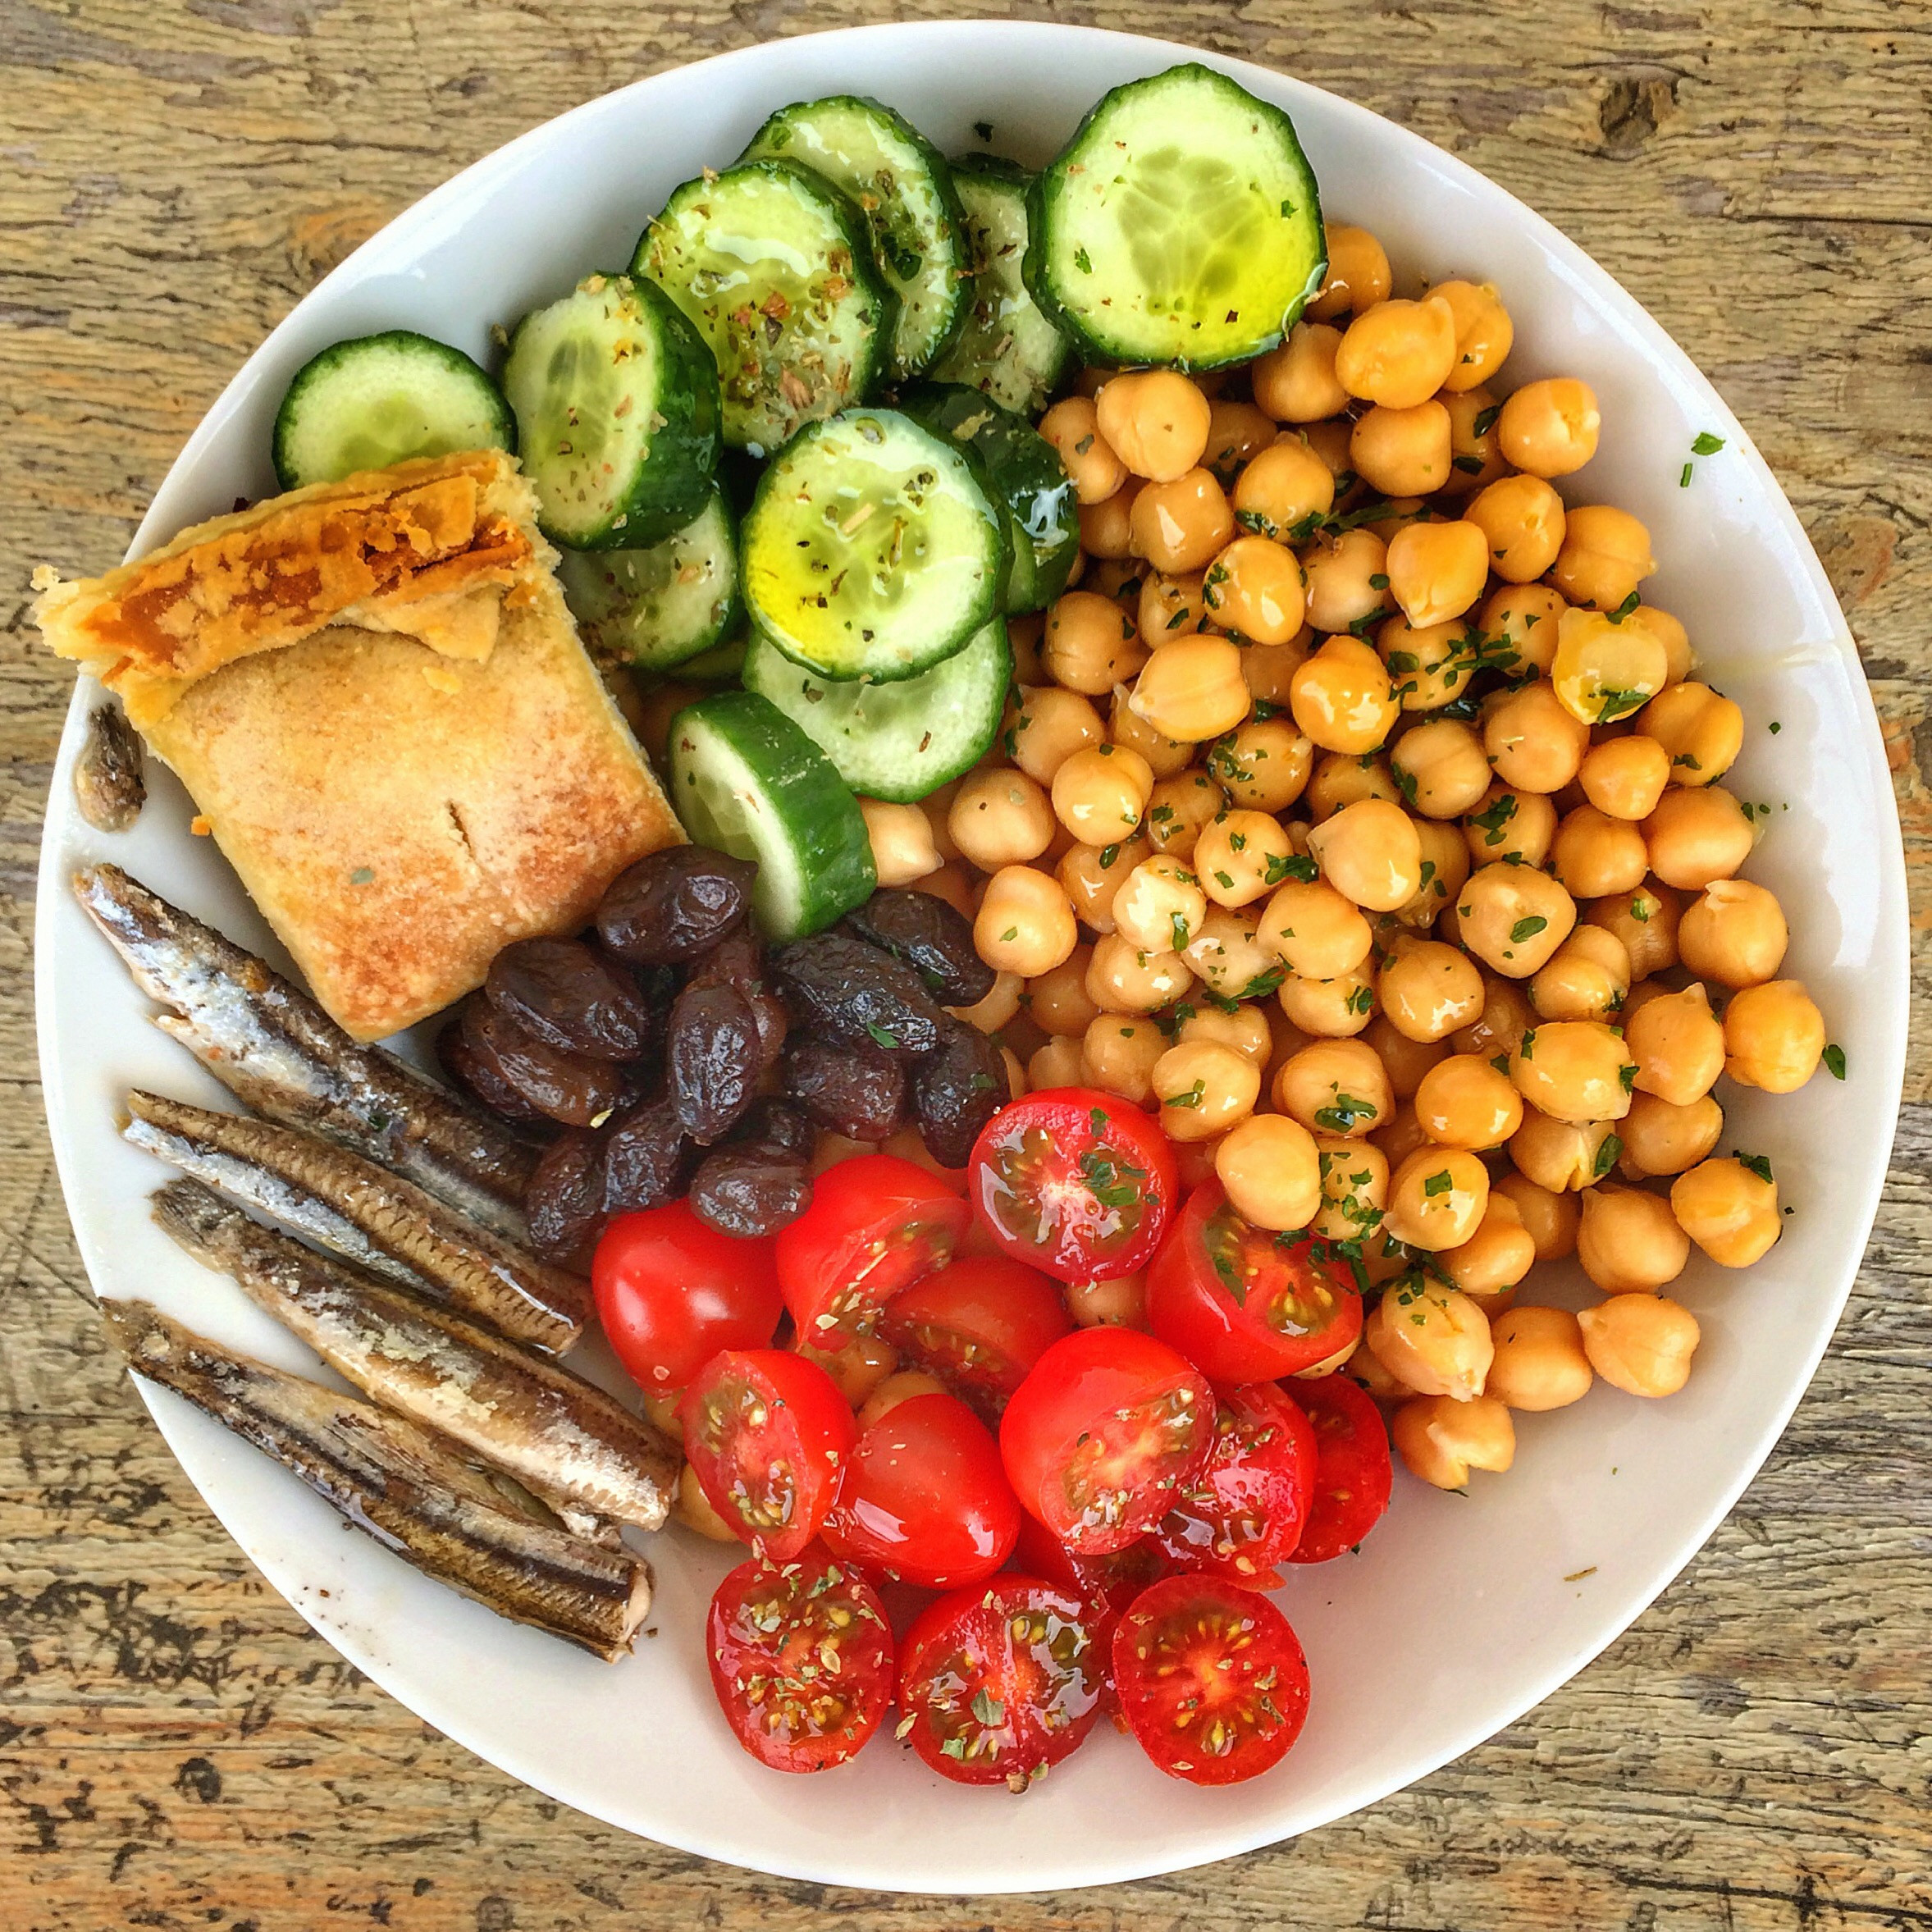 Mediterranean Diet On A Budget Elegant the Mediterranean Diet On A Bud 12 Tips that Will Save